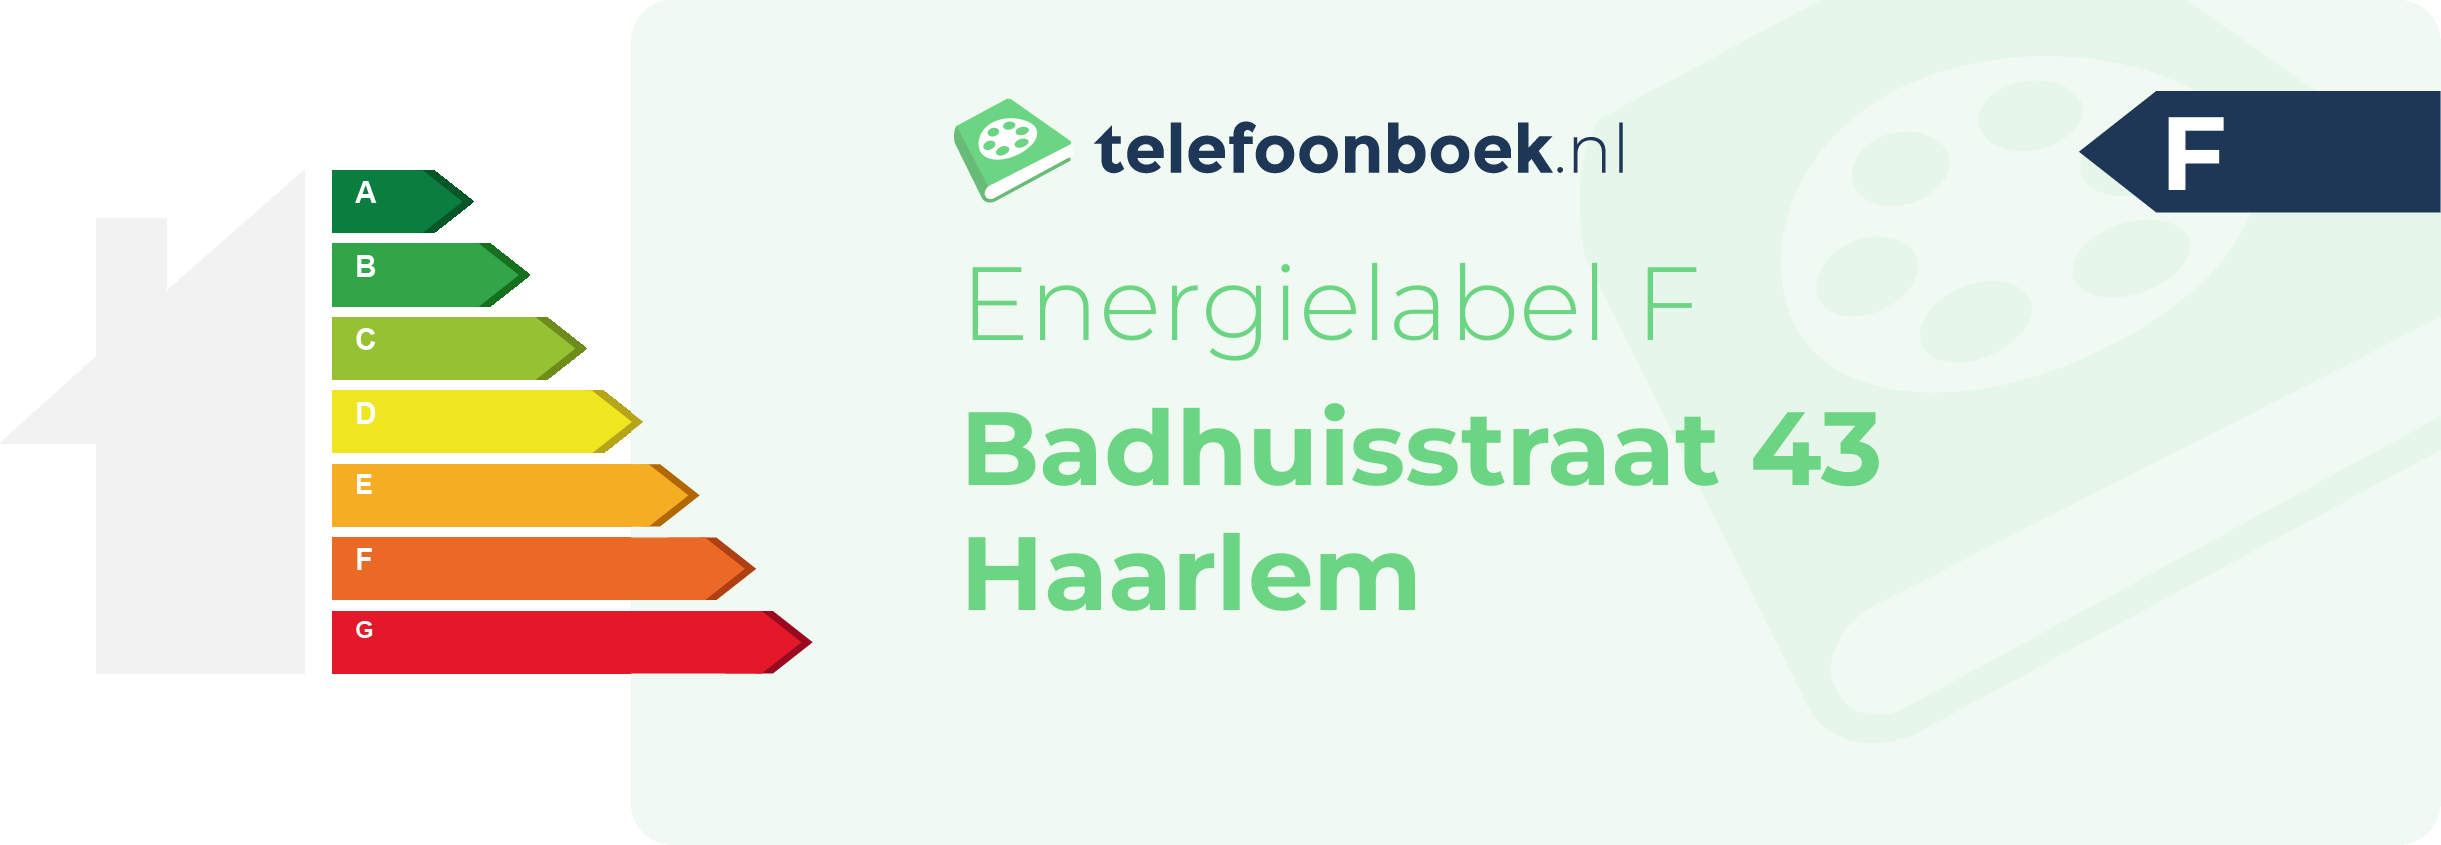 Energielabel Badhuisstraat 43 Haarlem